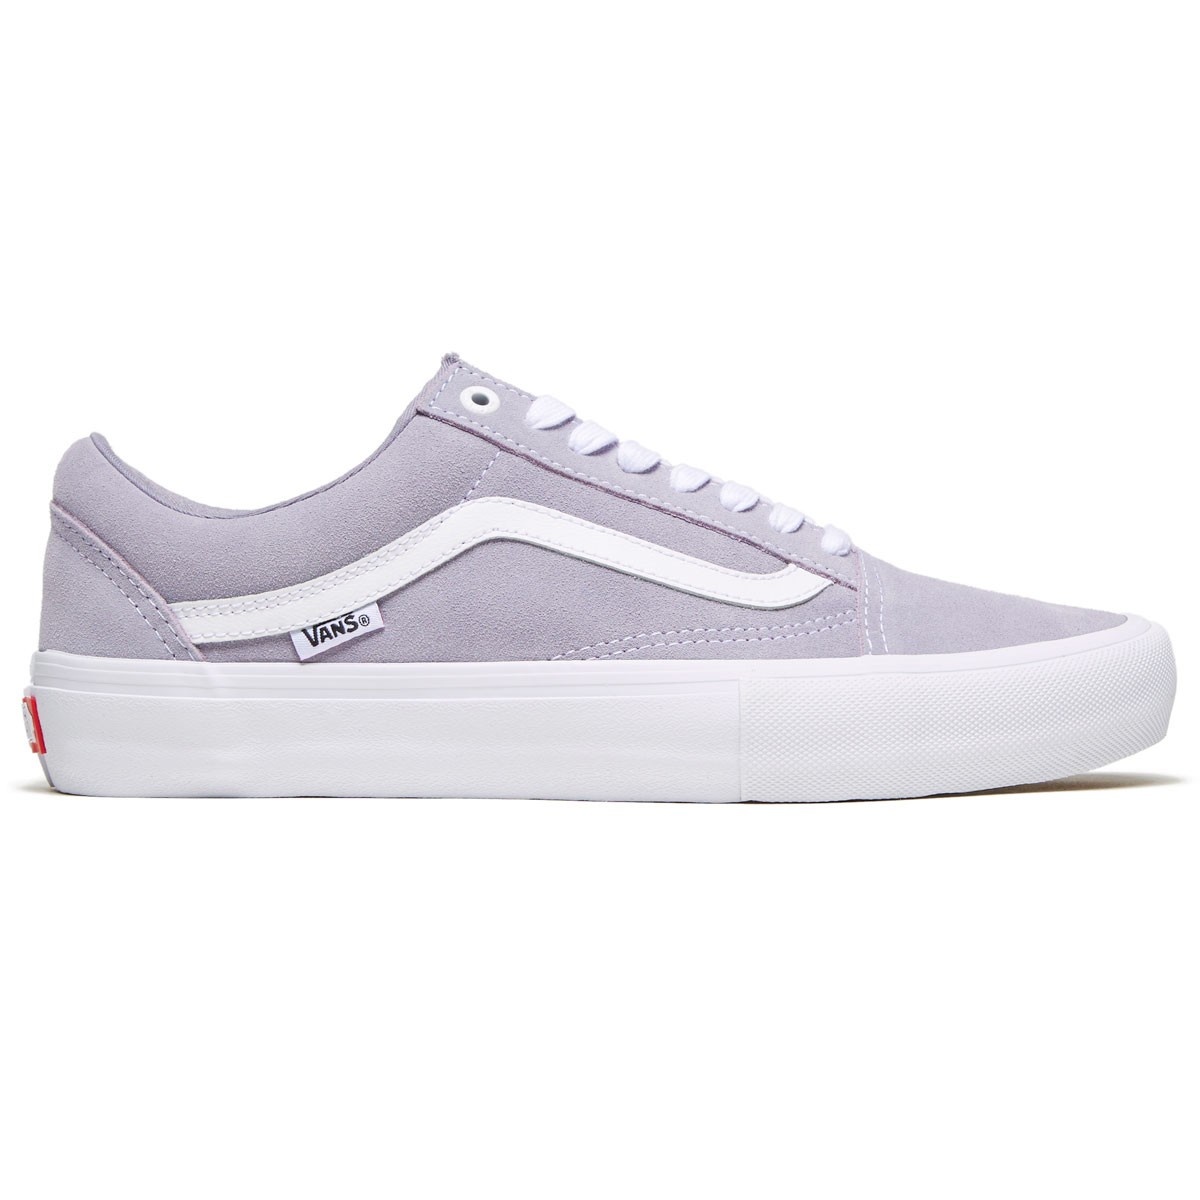 vans lilac shoes